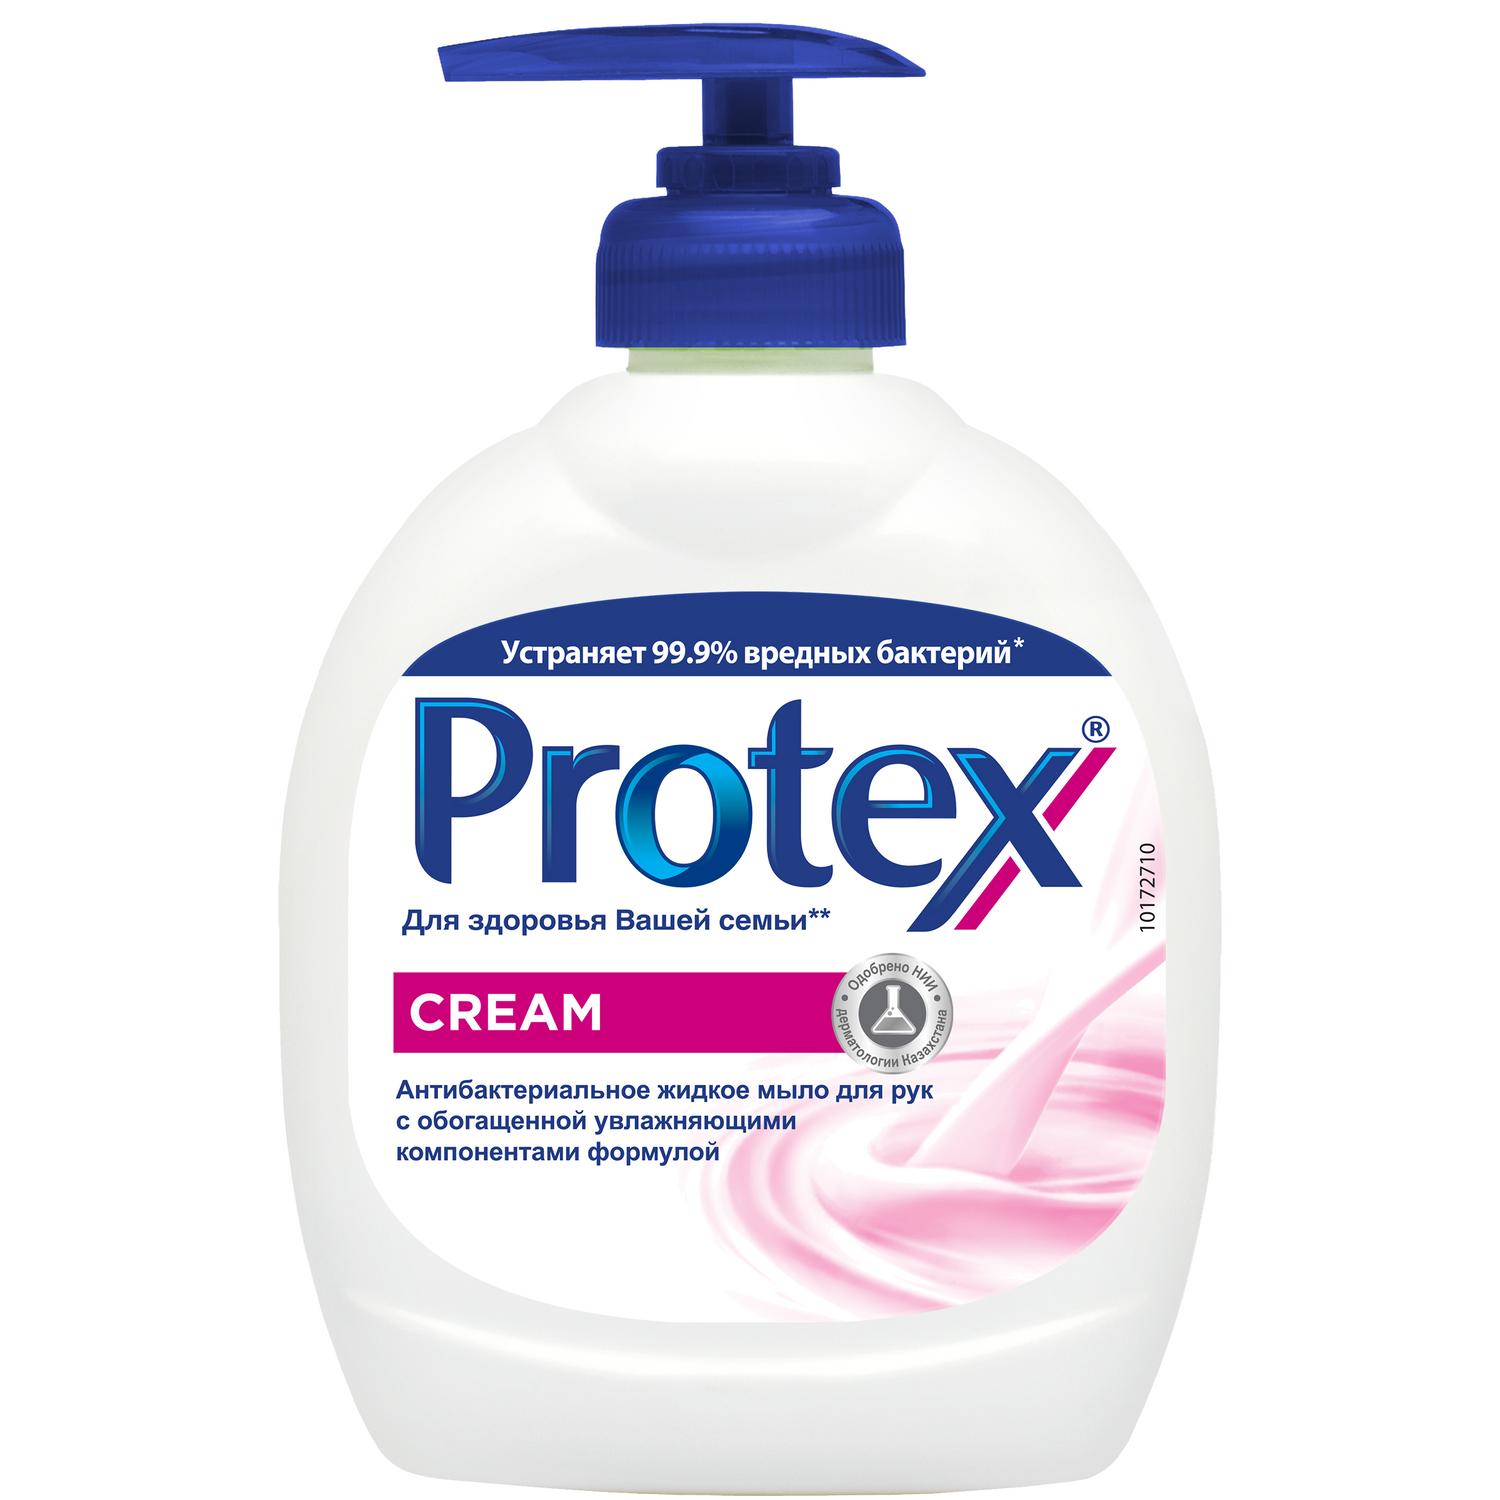 Protex Антибактериальное жидкое мыло для рук Cream, 300 мл антибактериальное жидкое мыло бриллиант